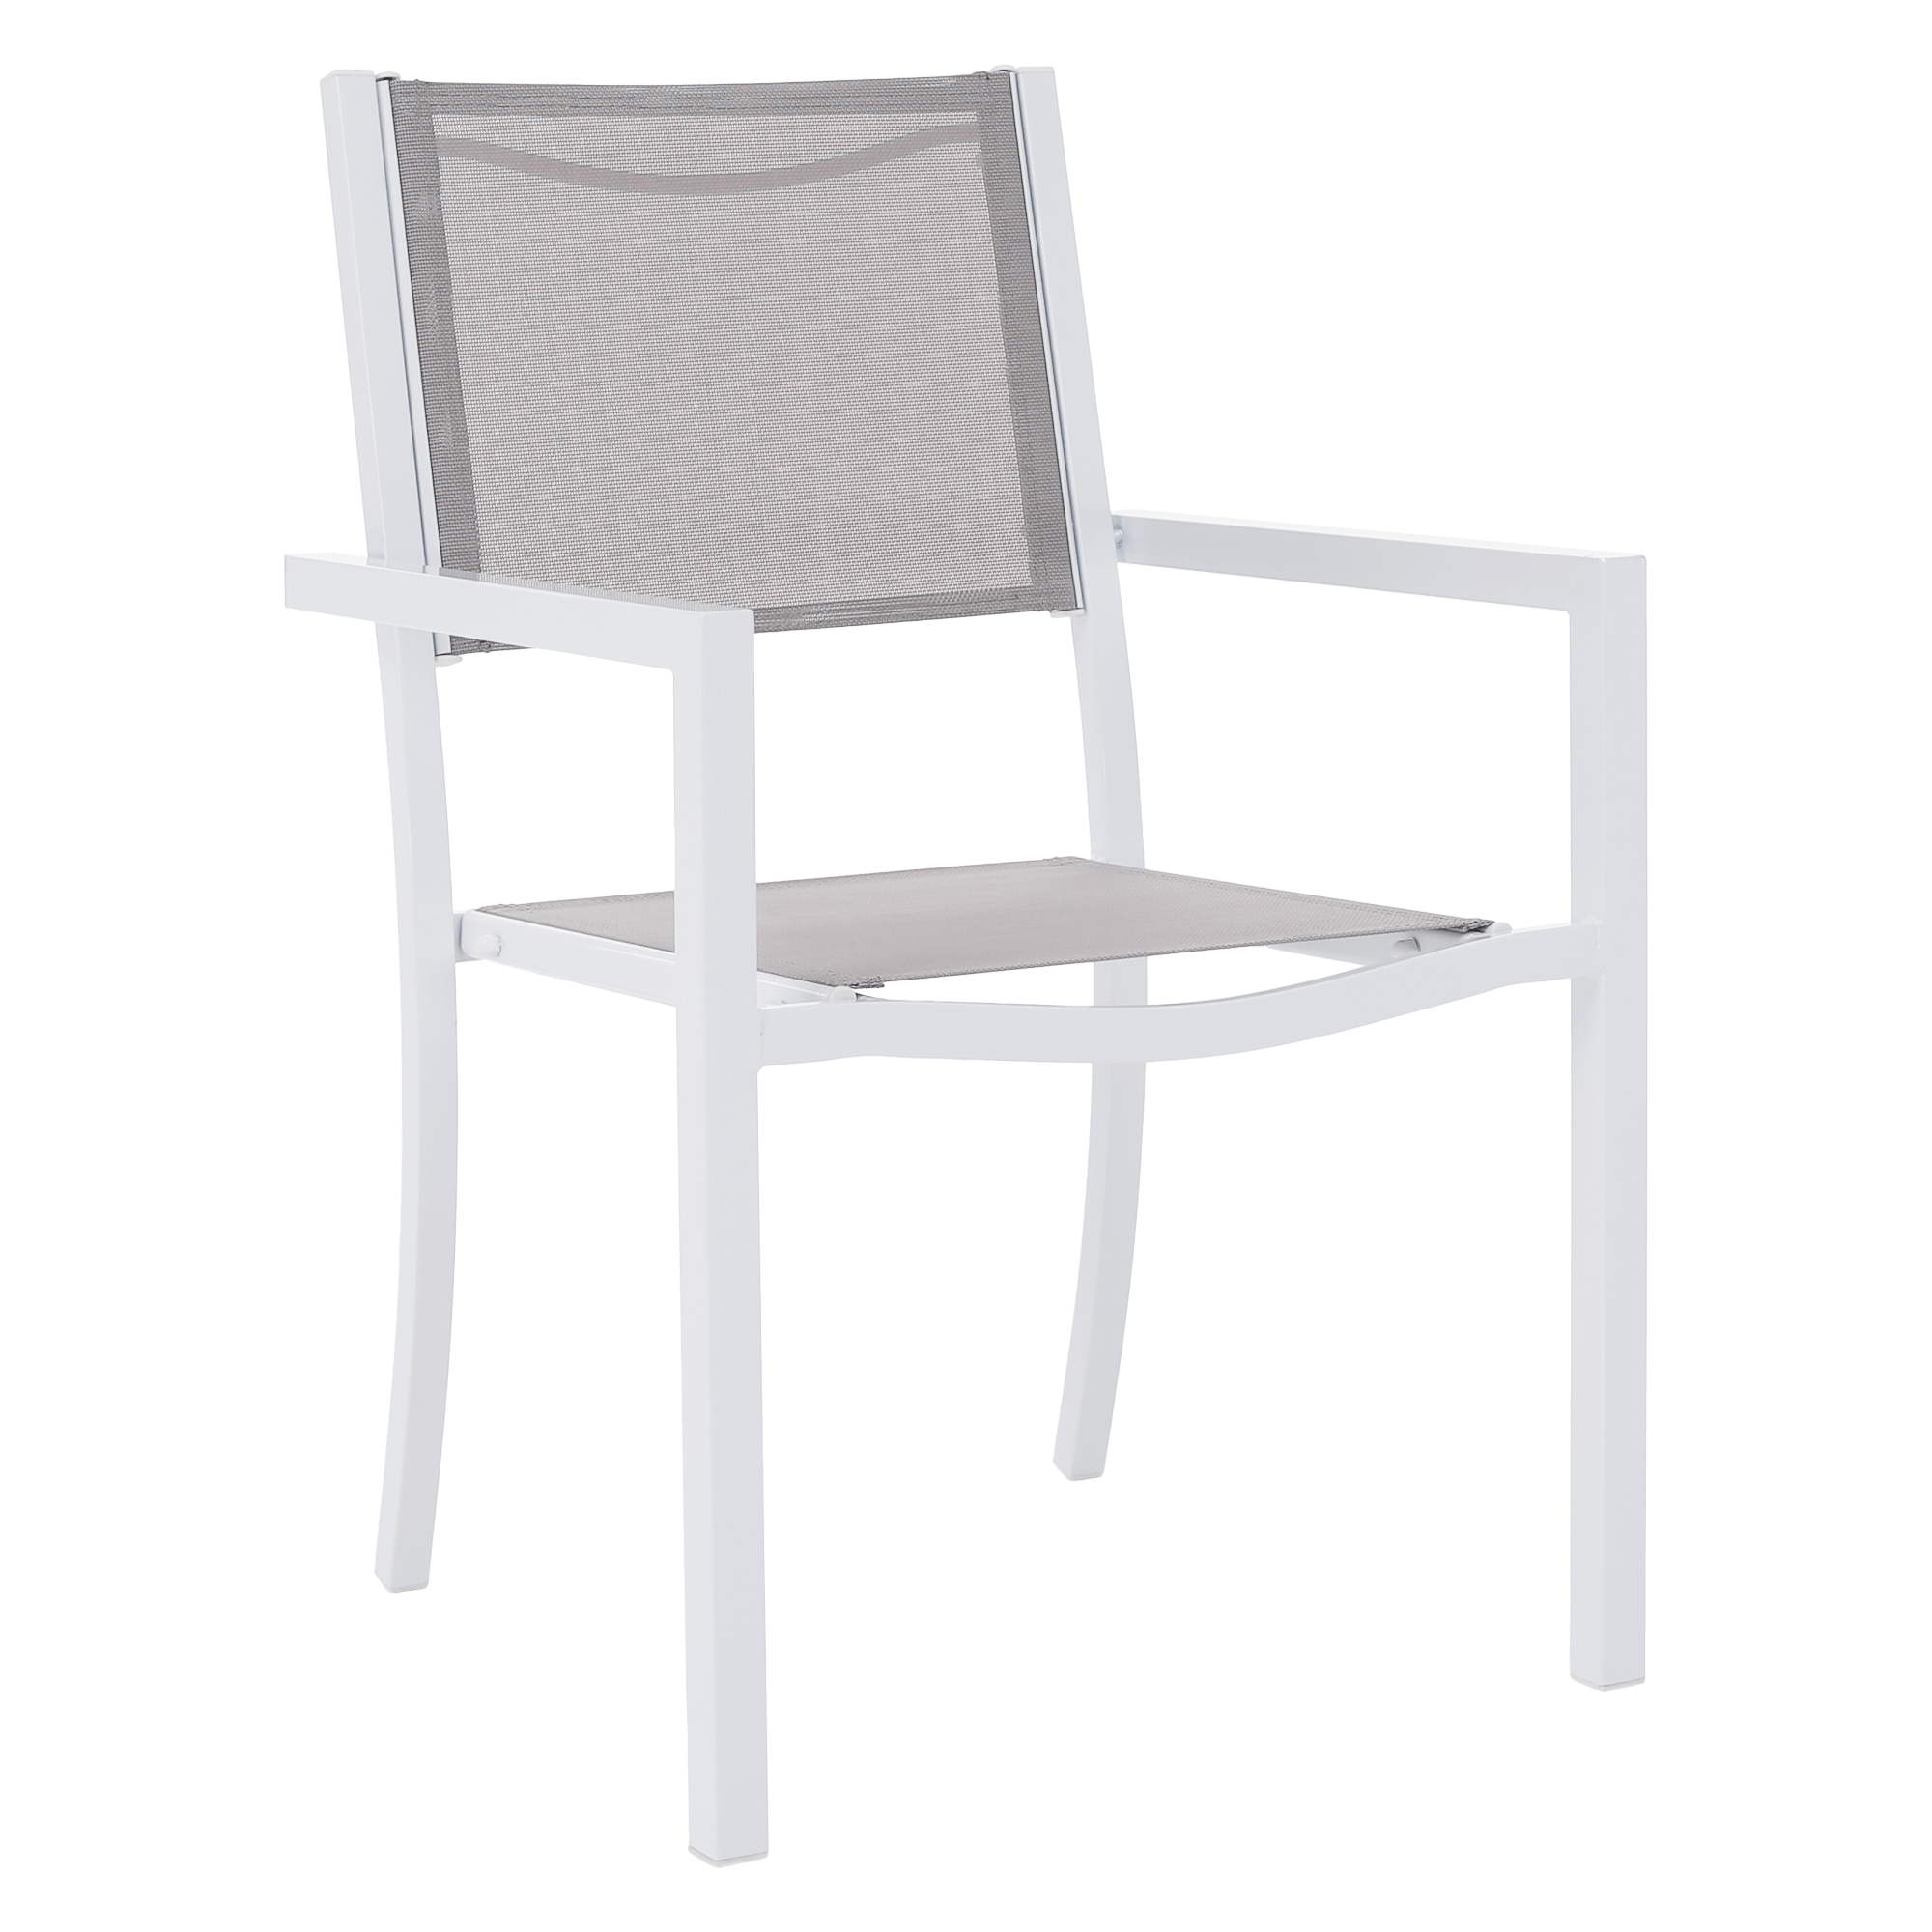 Kerti rakásolható szék, fehér acél/világosszürke, DORIO